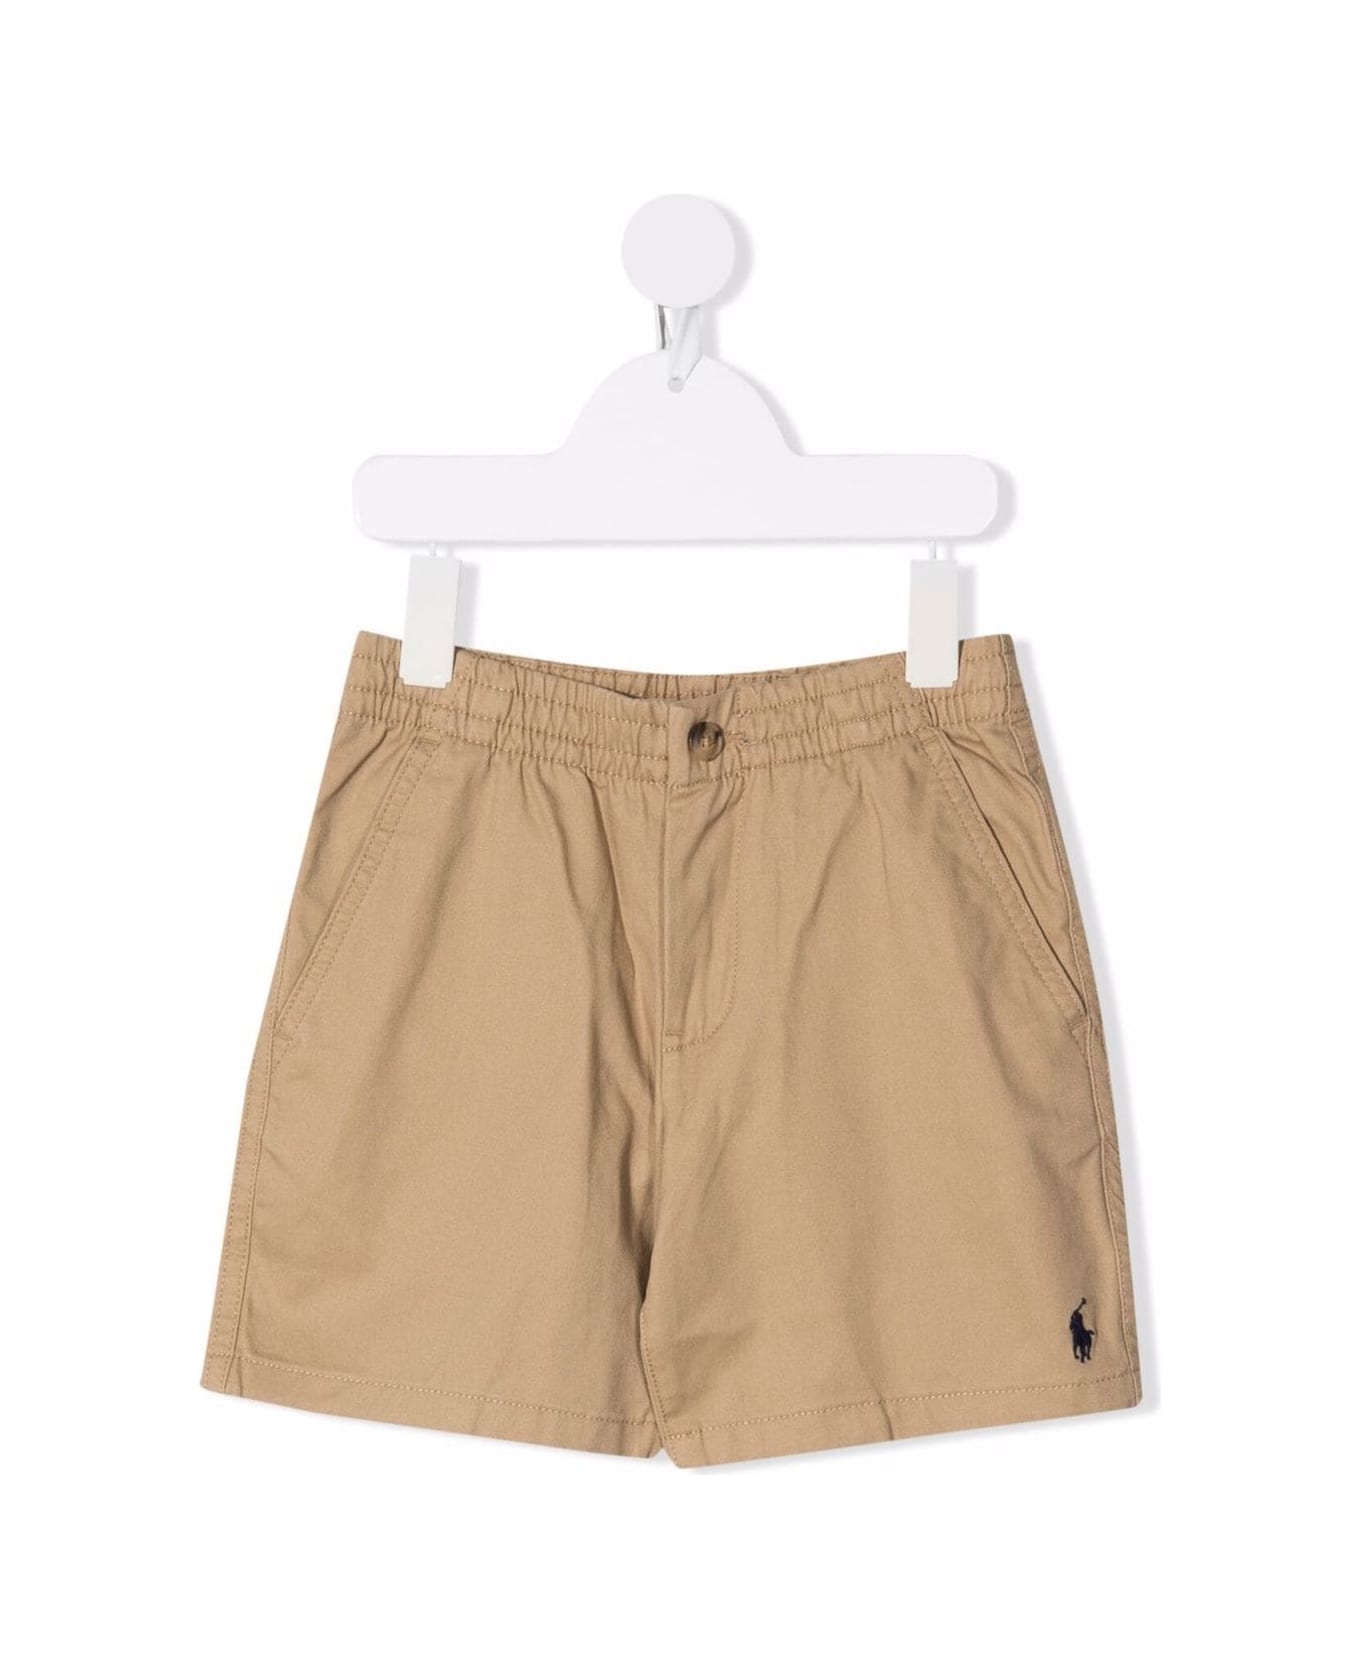 Polo Ralph Lauren Beige Shorts With Pockets In Stretch Cotton Boy - Beige